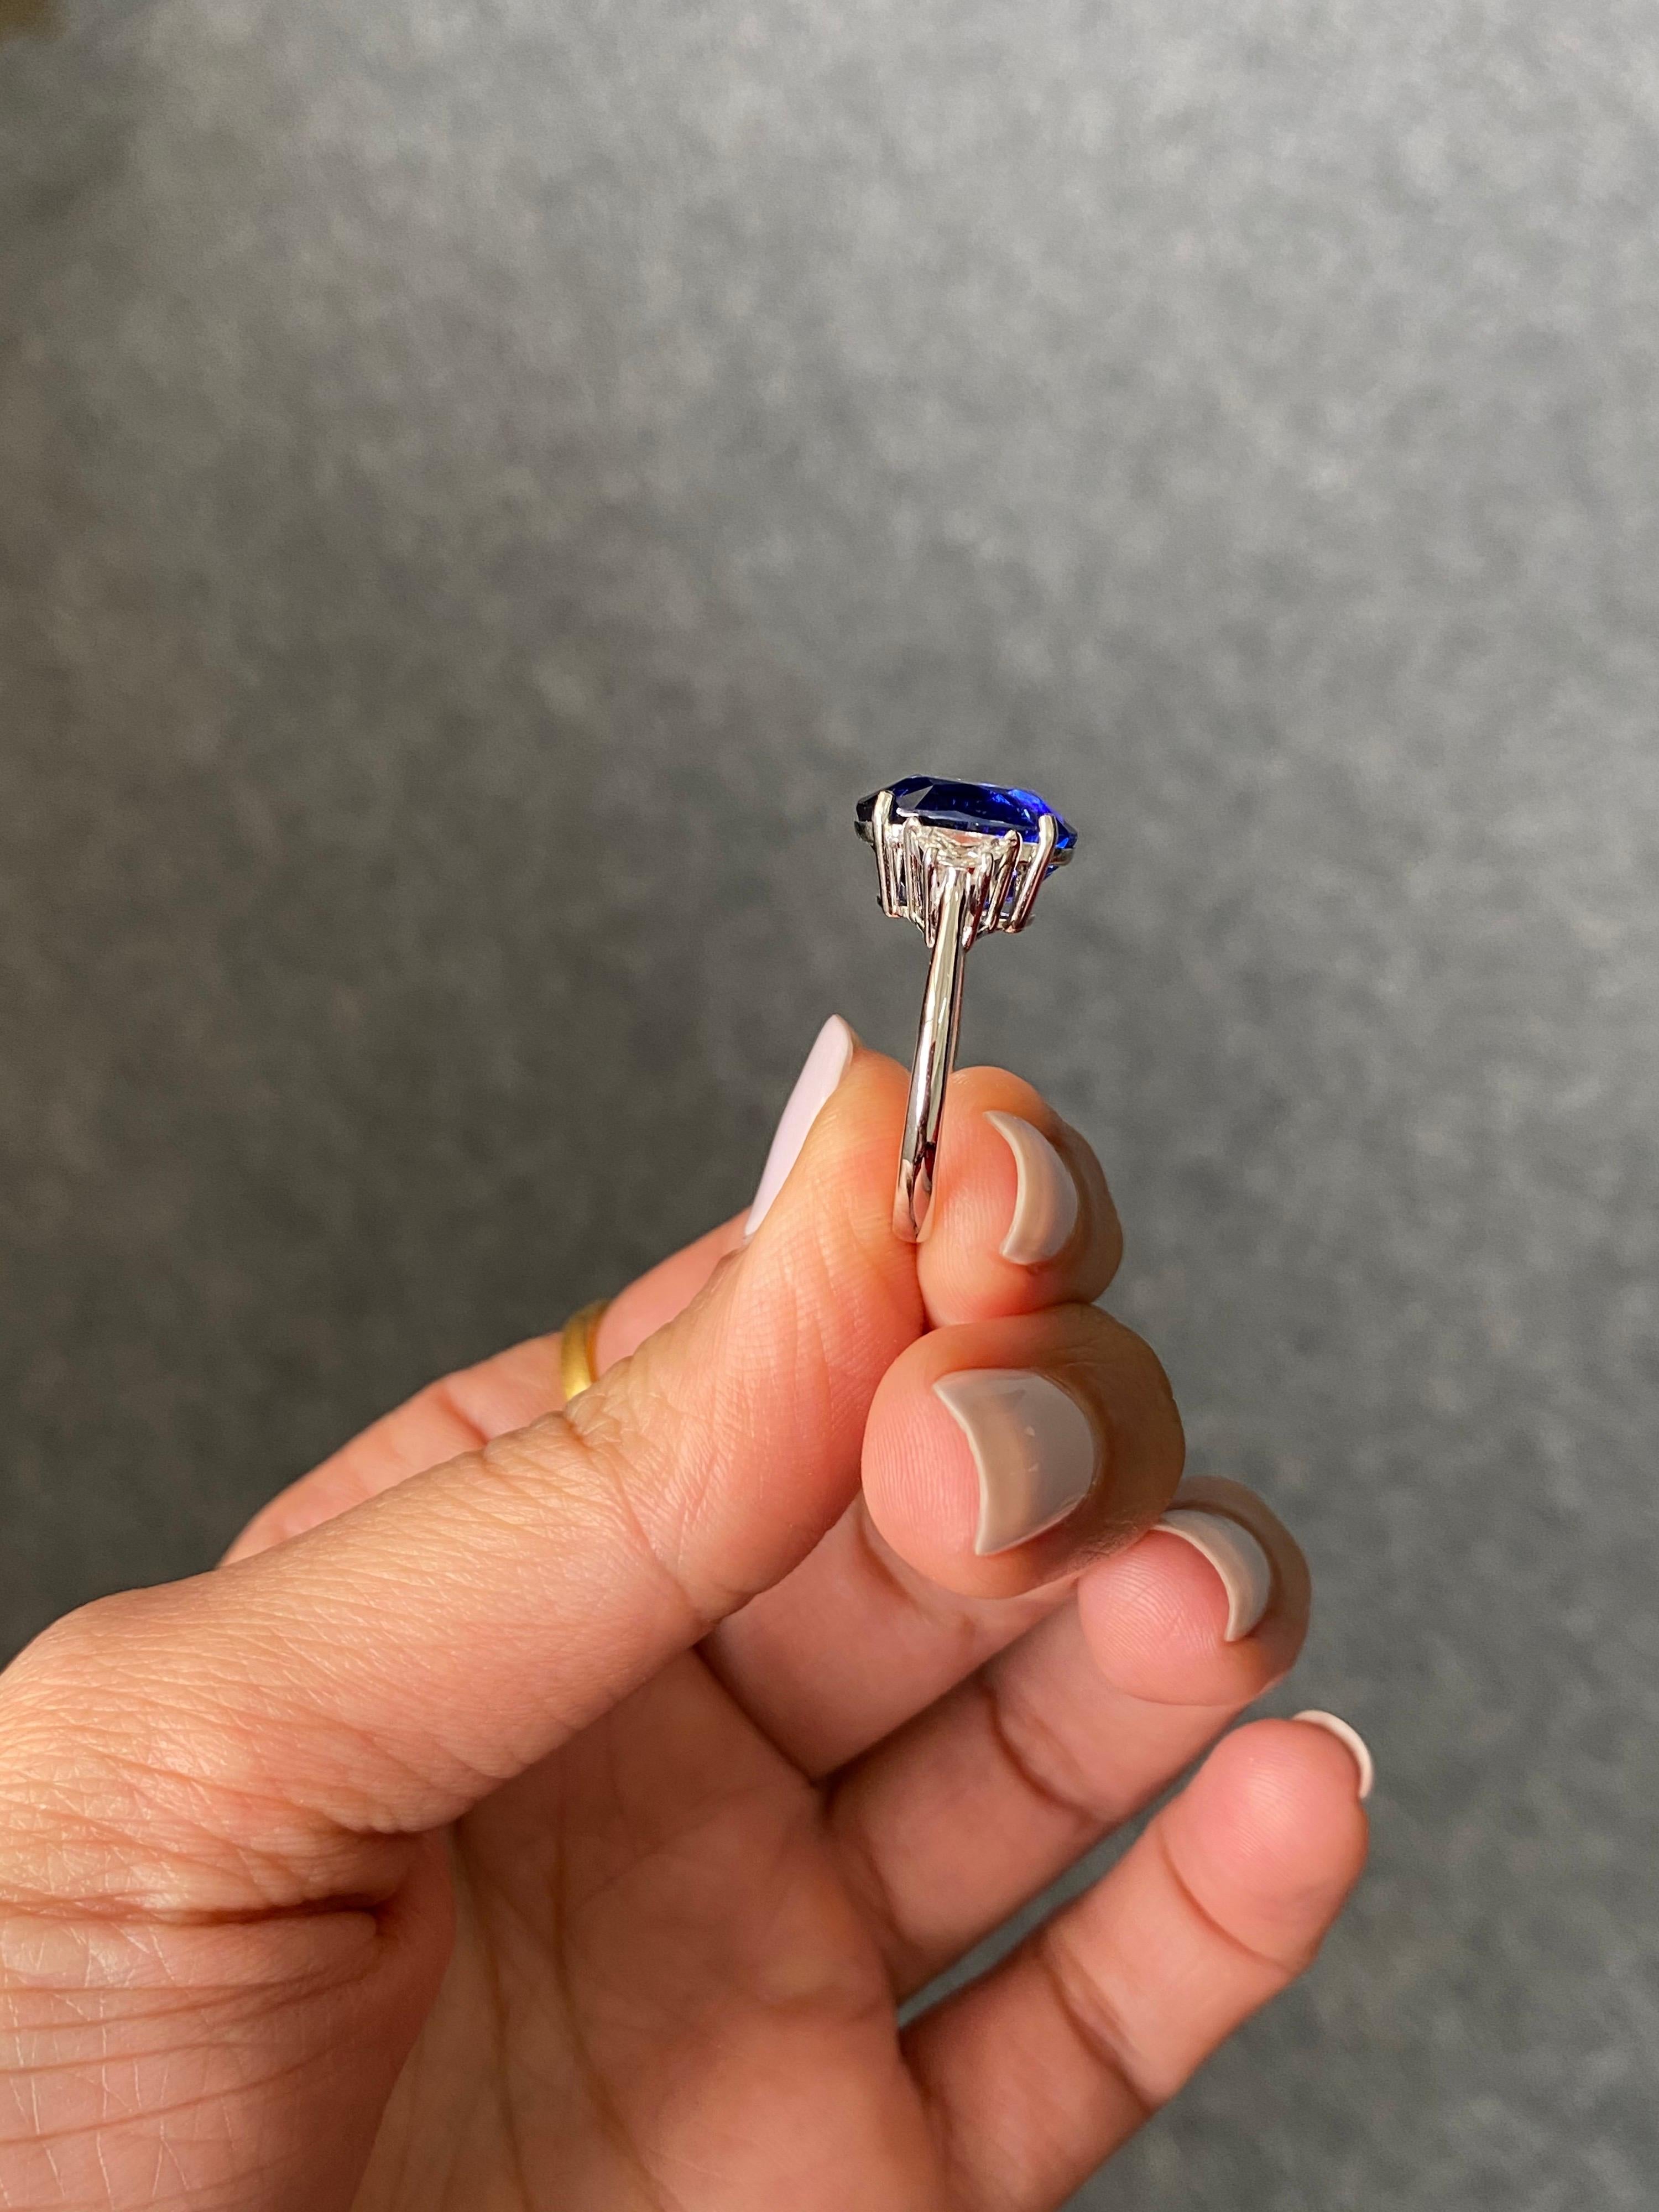 Une bague de fiançailles classique à trois pierres, avec un saphir bleu de Ceylan (Sri Lanka) de forme ovale de 6,53 carats et des diamants trapèze incolores de qualité VS de 0,36 carat. La pierre centrale n'a pas d'inclusions, elle est très